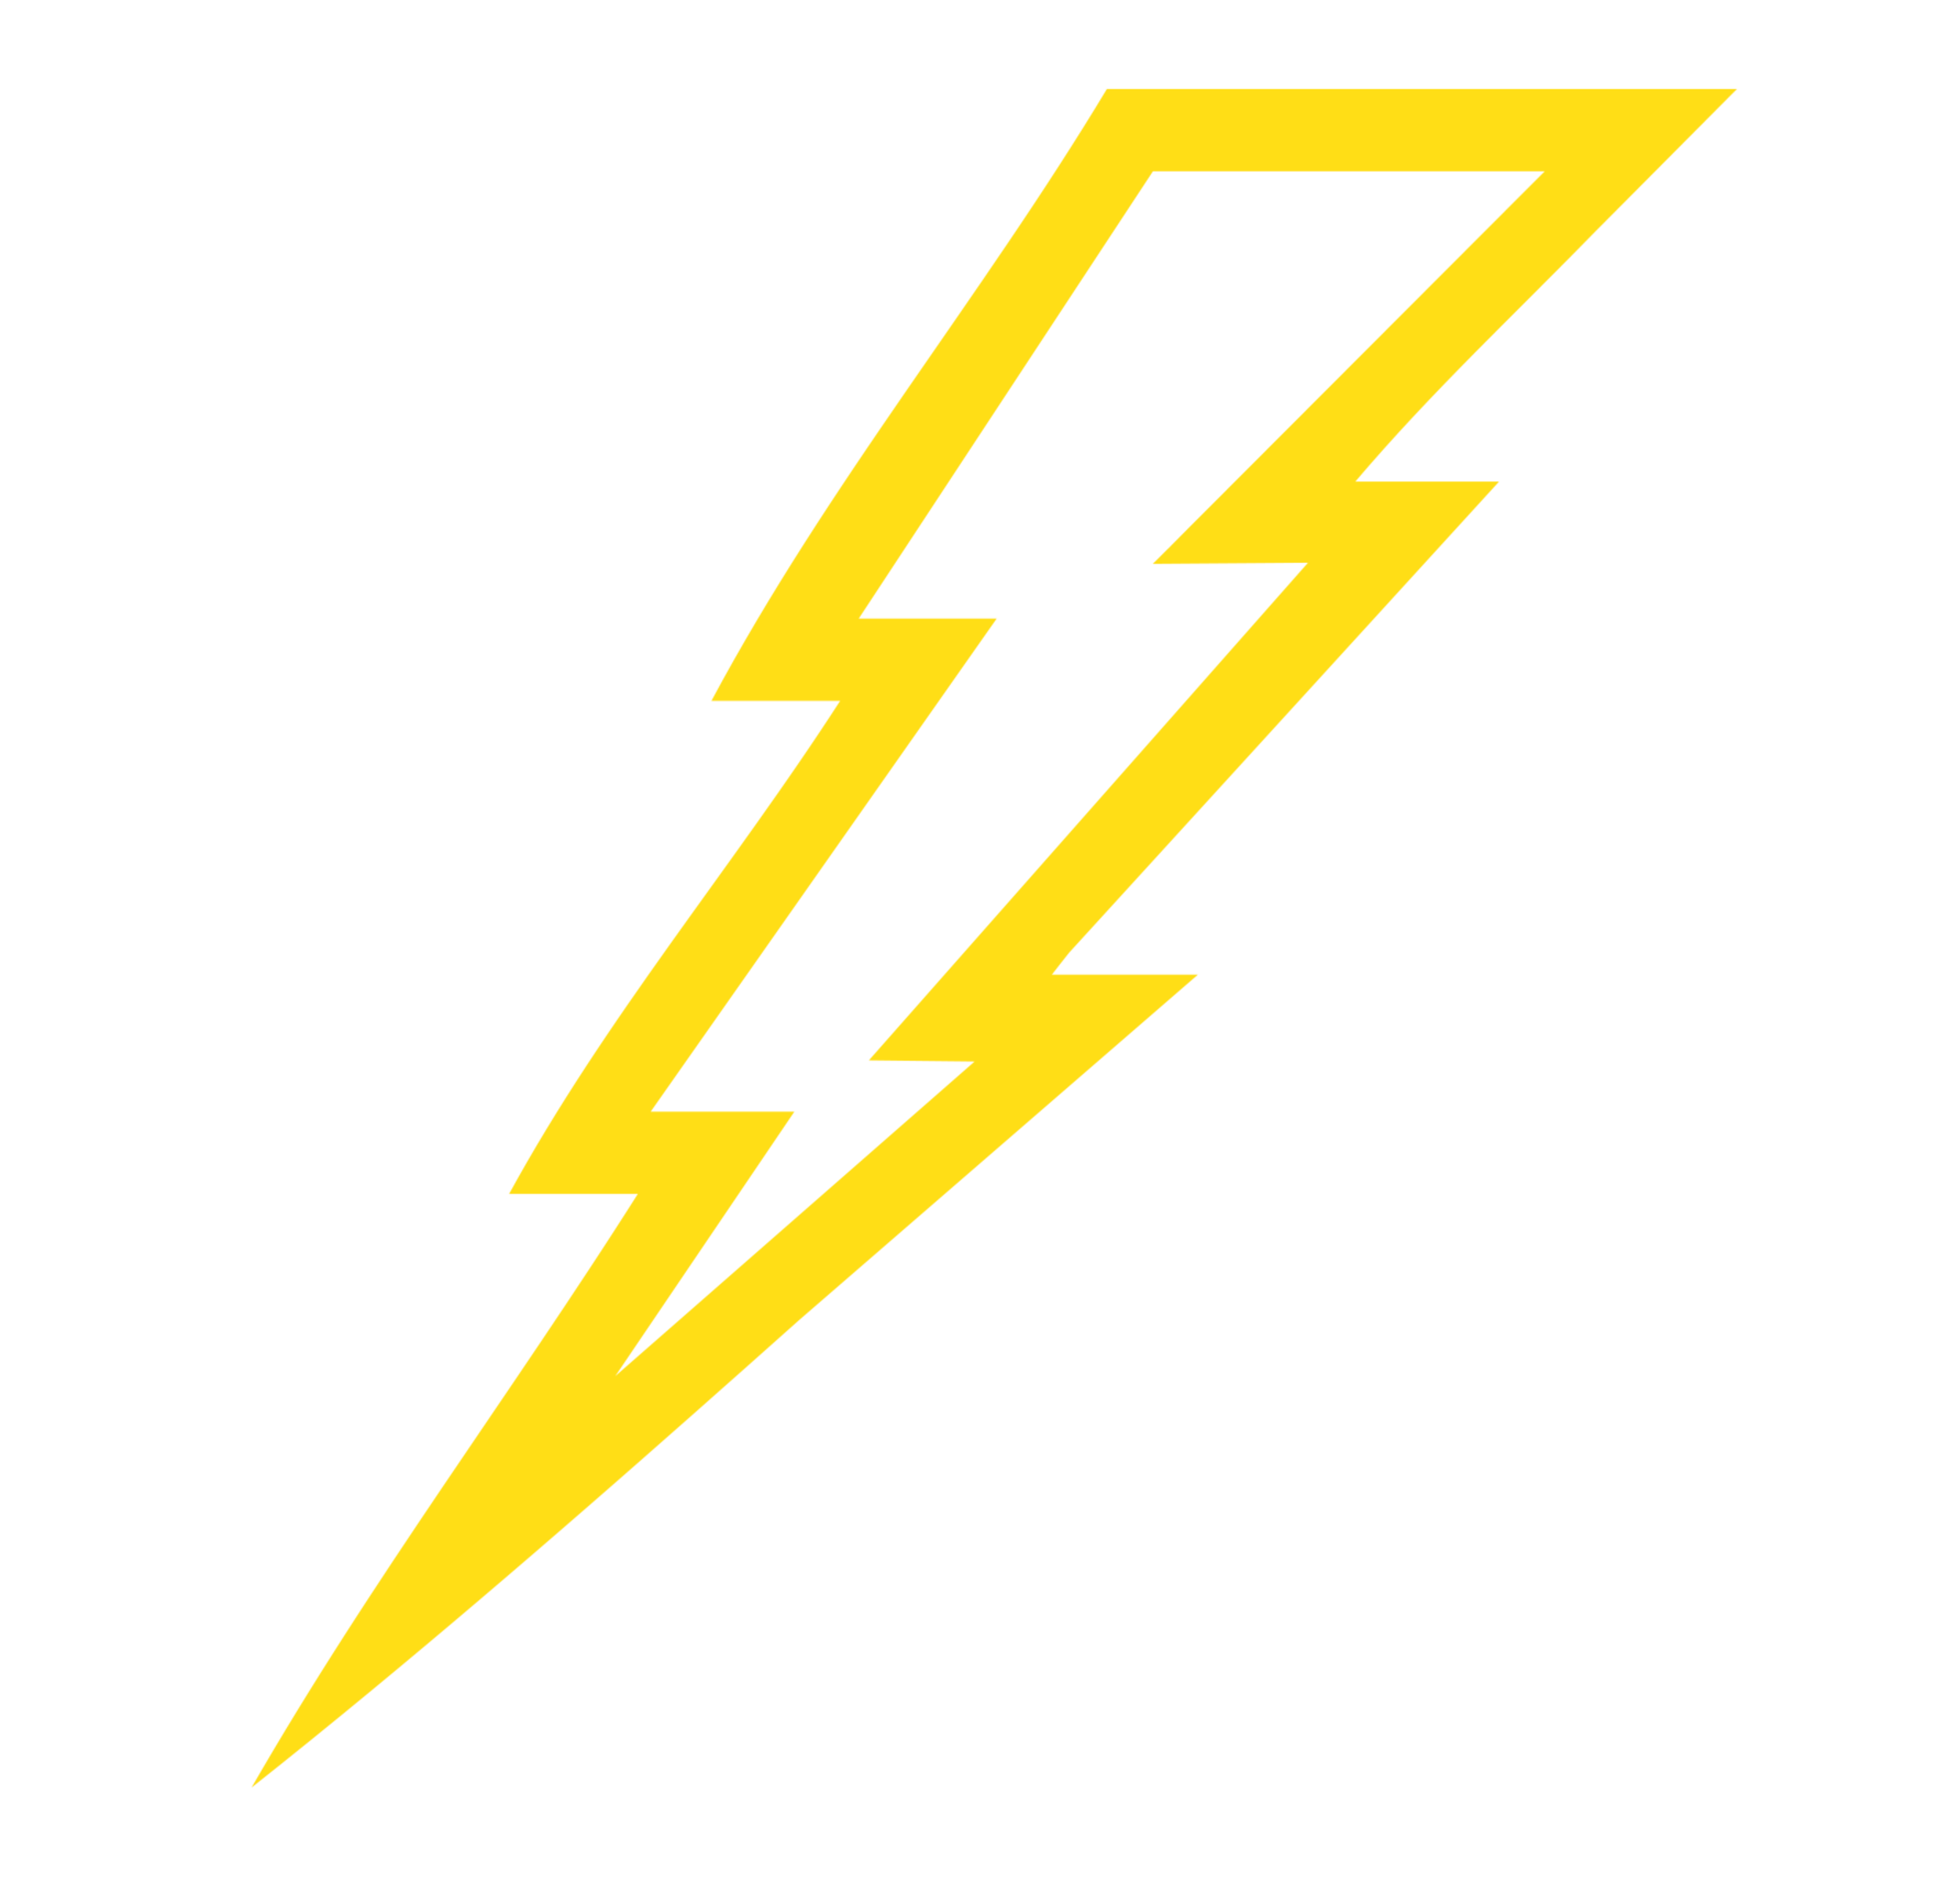 Lightning Bolt Vector | Free Download Clip Art | Free Clip Art ...